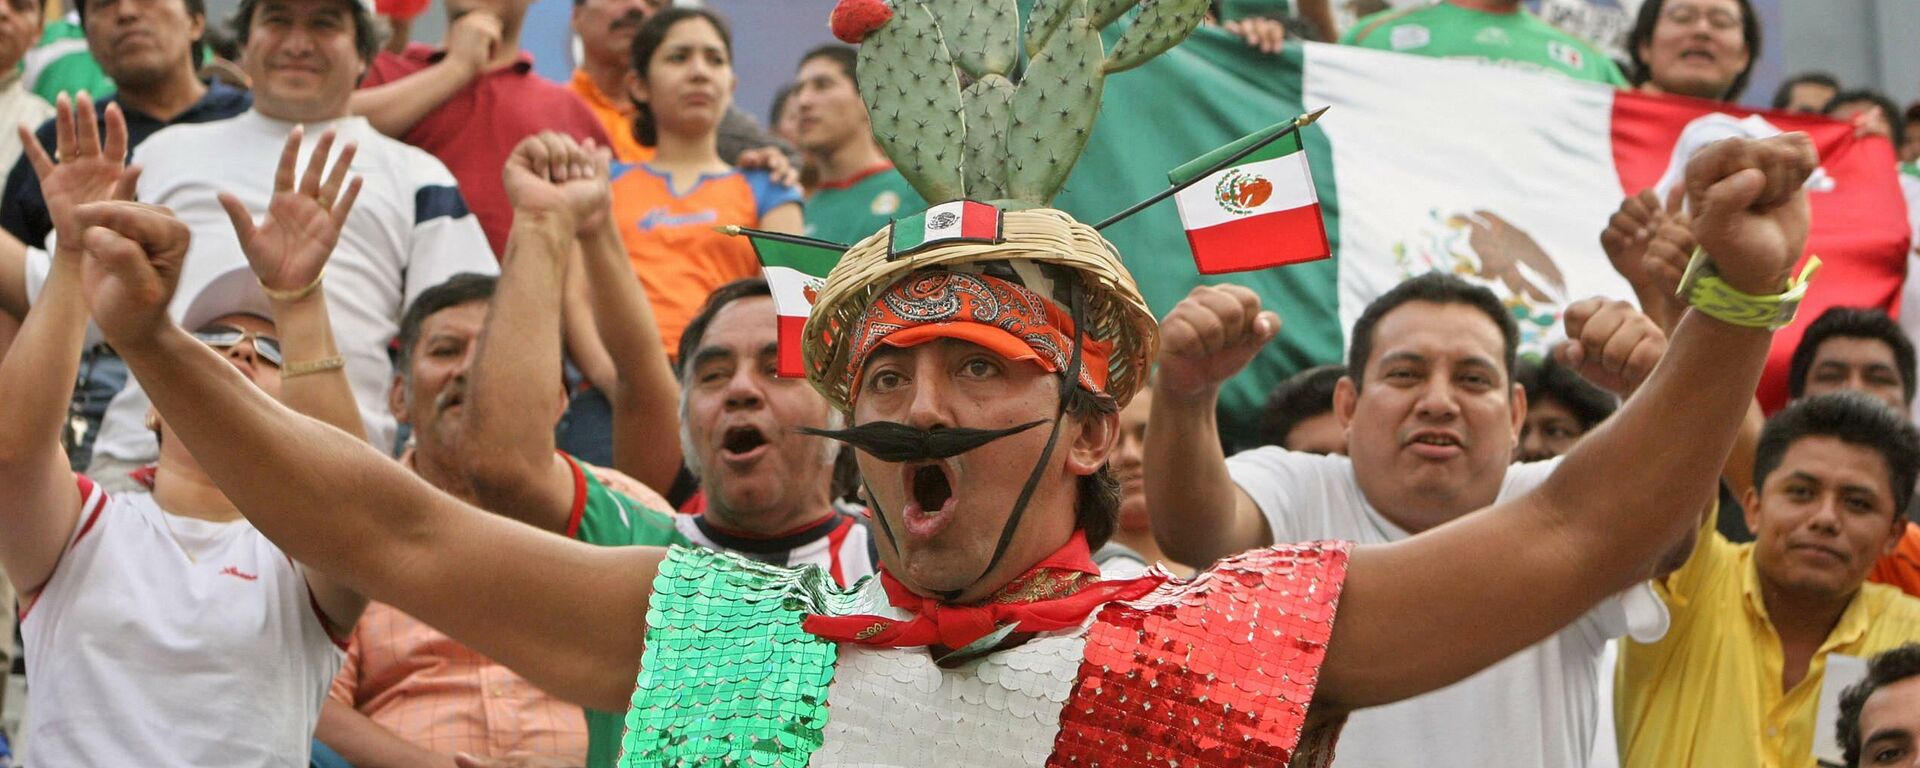 Mexicanos festejan en partidio de la Selección Mexicana - Sputnik Mundo, 1920, 12.10.2021